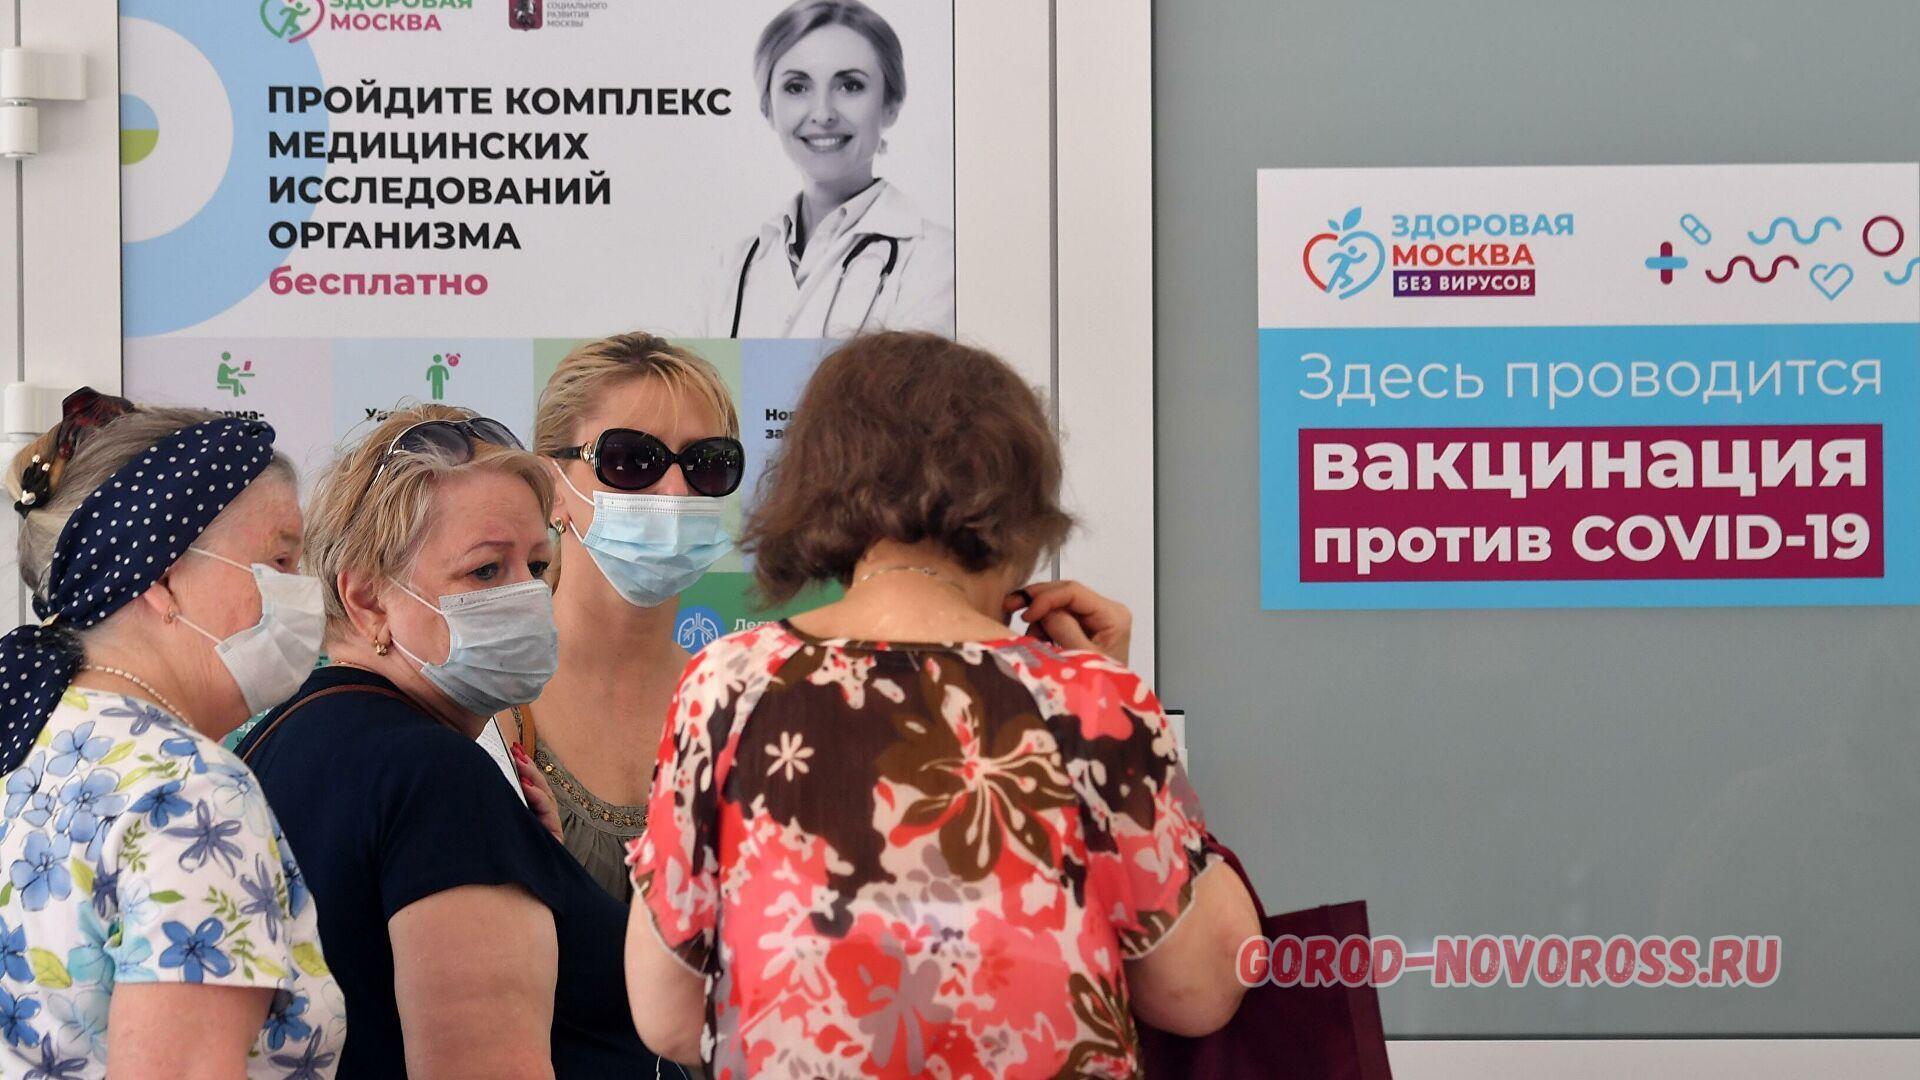 Московская вакцина. Вакцинация в Москве. Прививки в Москве. Здесь проводится вакцинация. Коронавирус в Москве вакцинация.